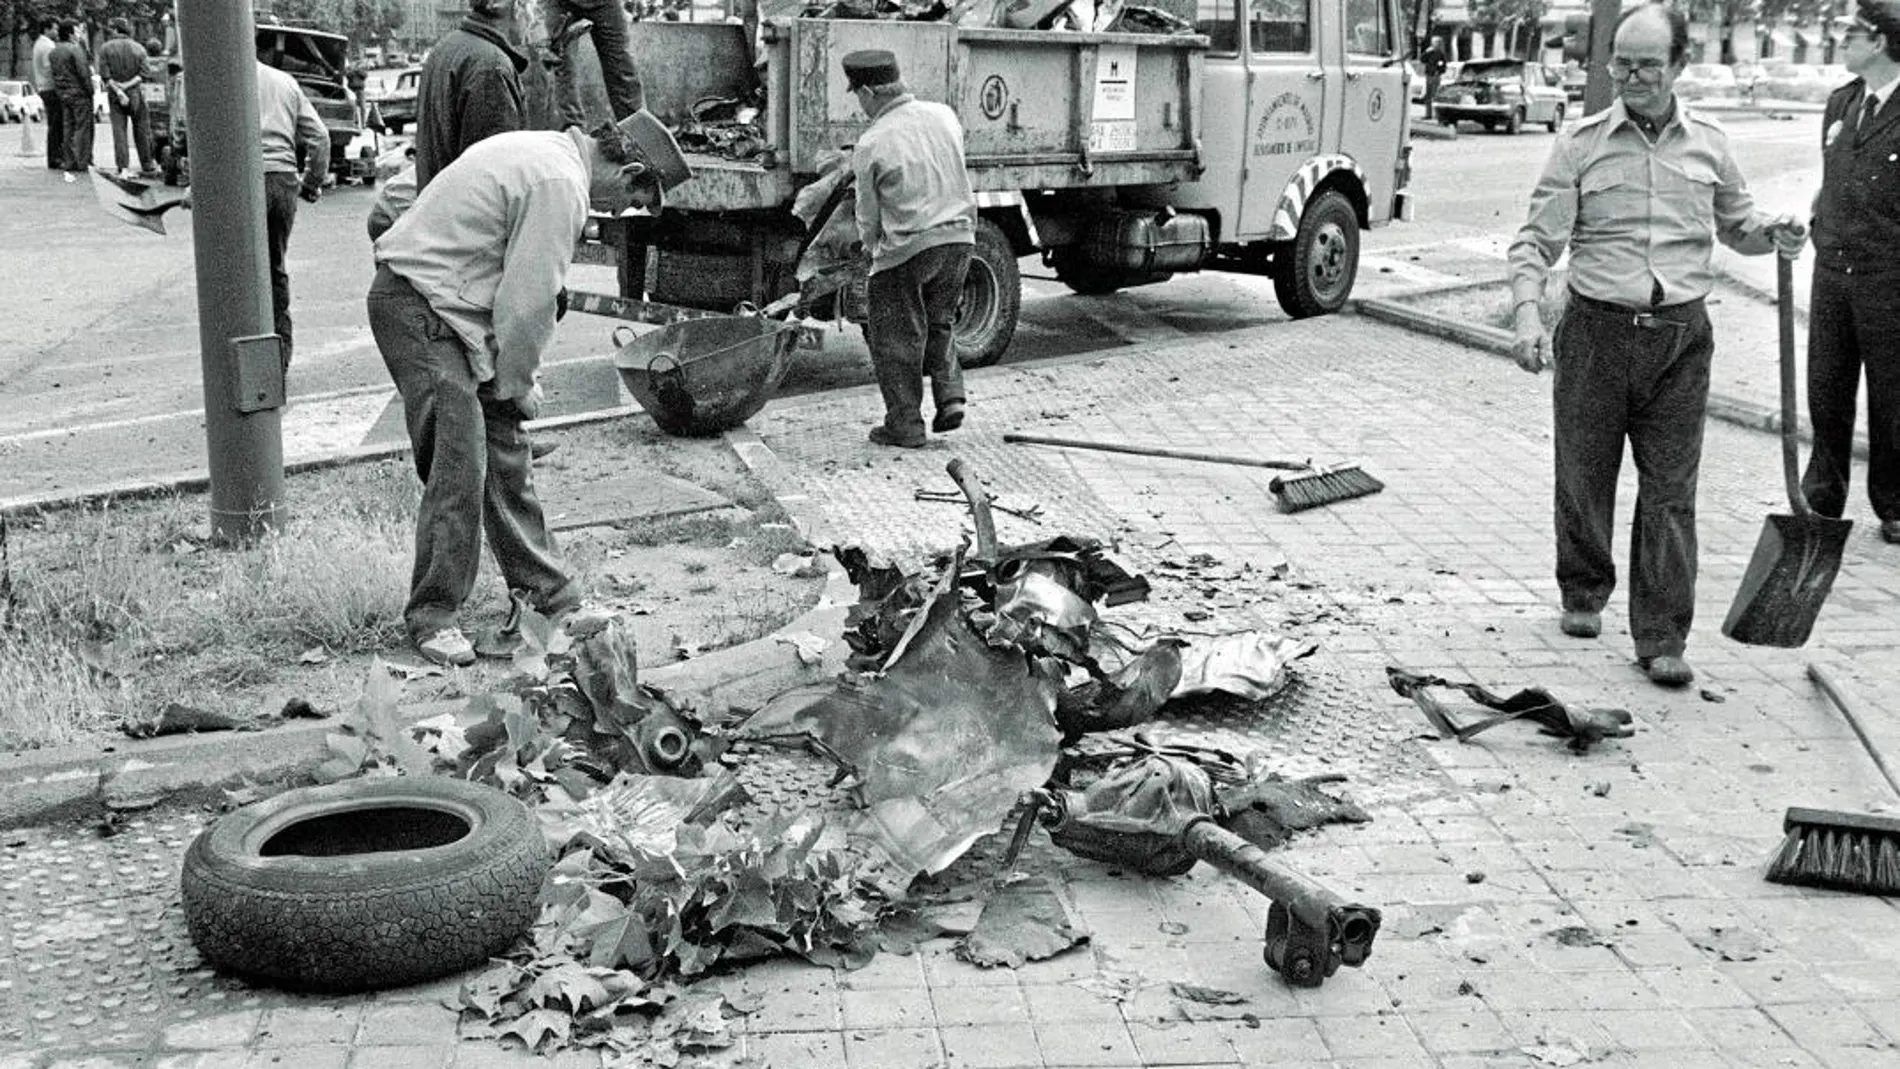 En 1987, Potros cometió su primer atentado en La Castellana de Madrid